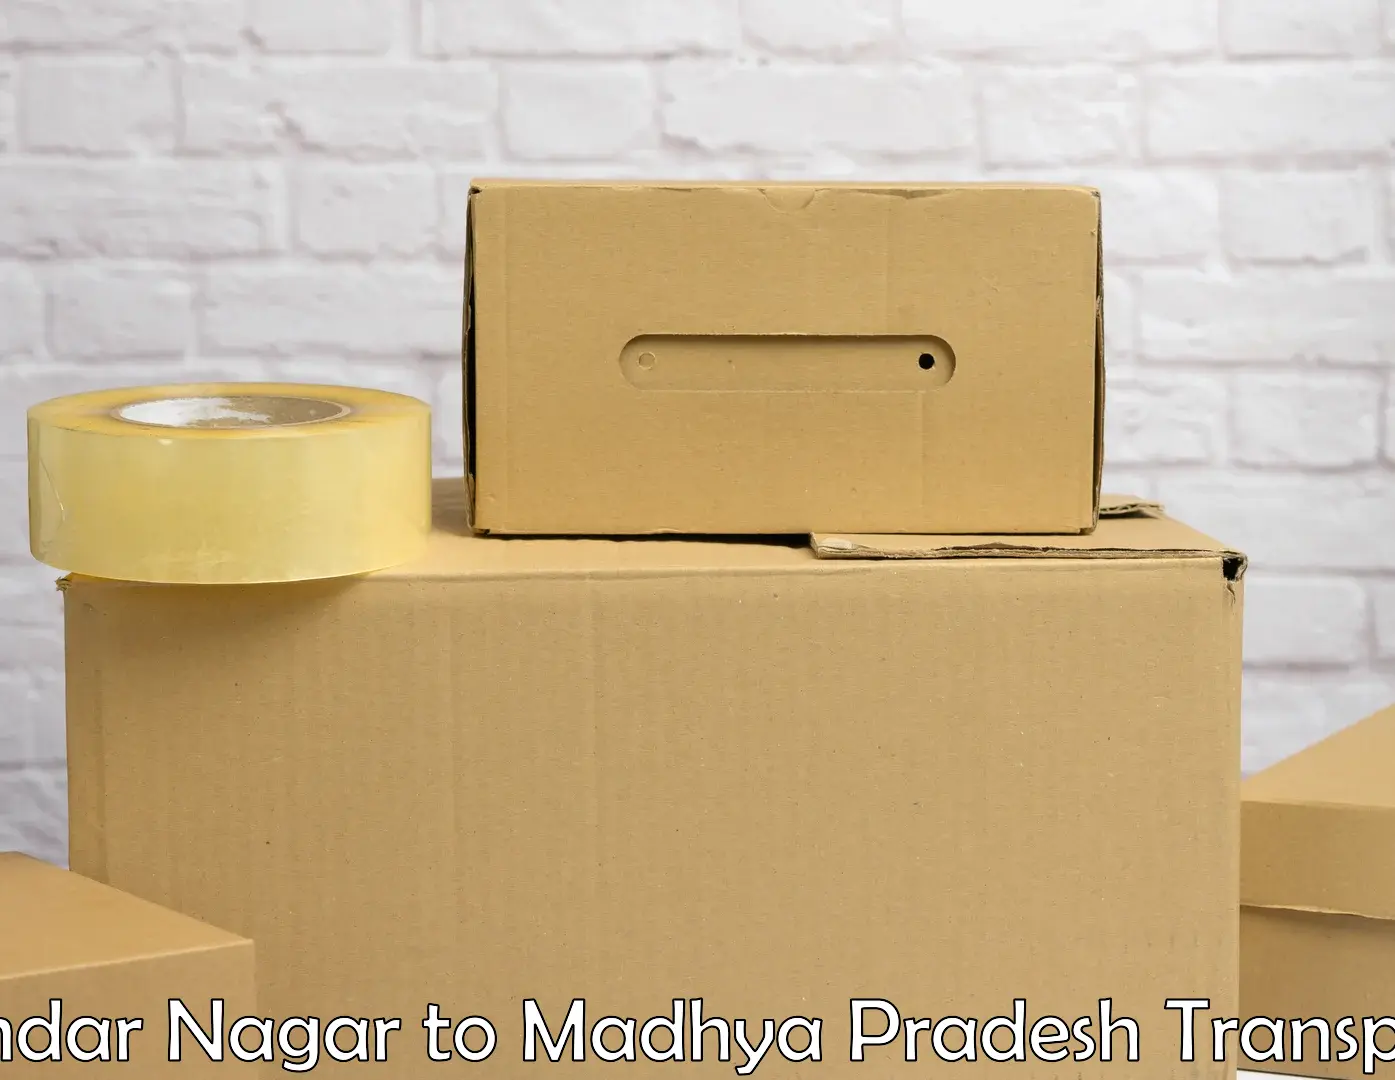 Cargo transportation services in Sundar Nagar to Neemuch